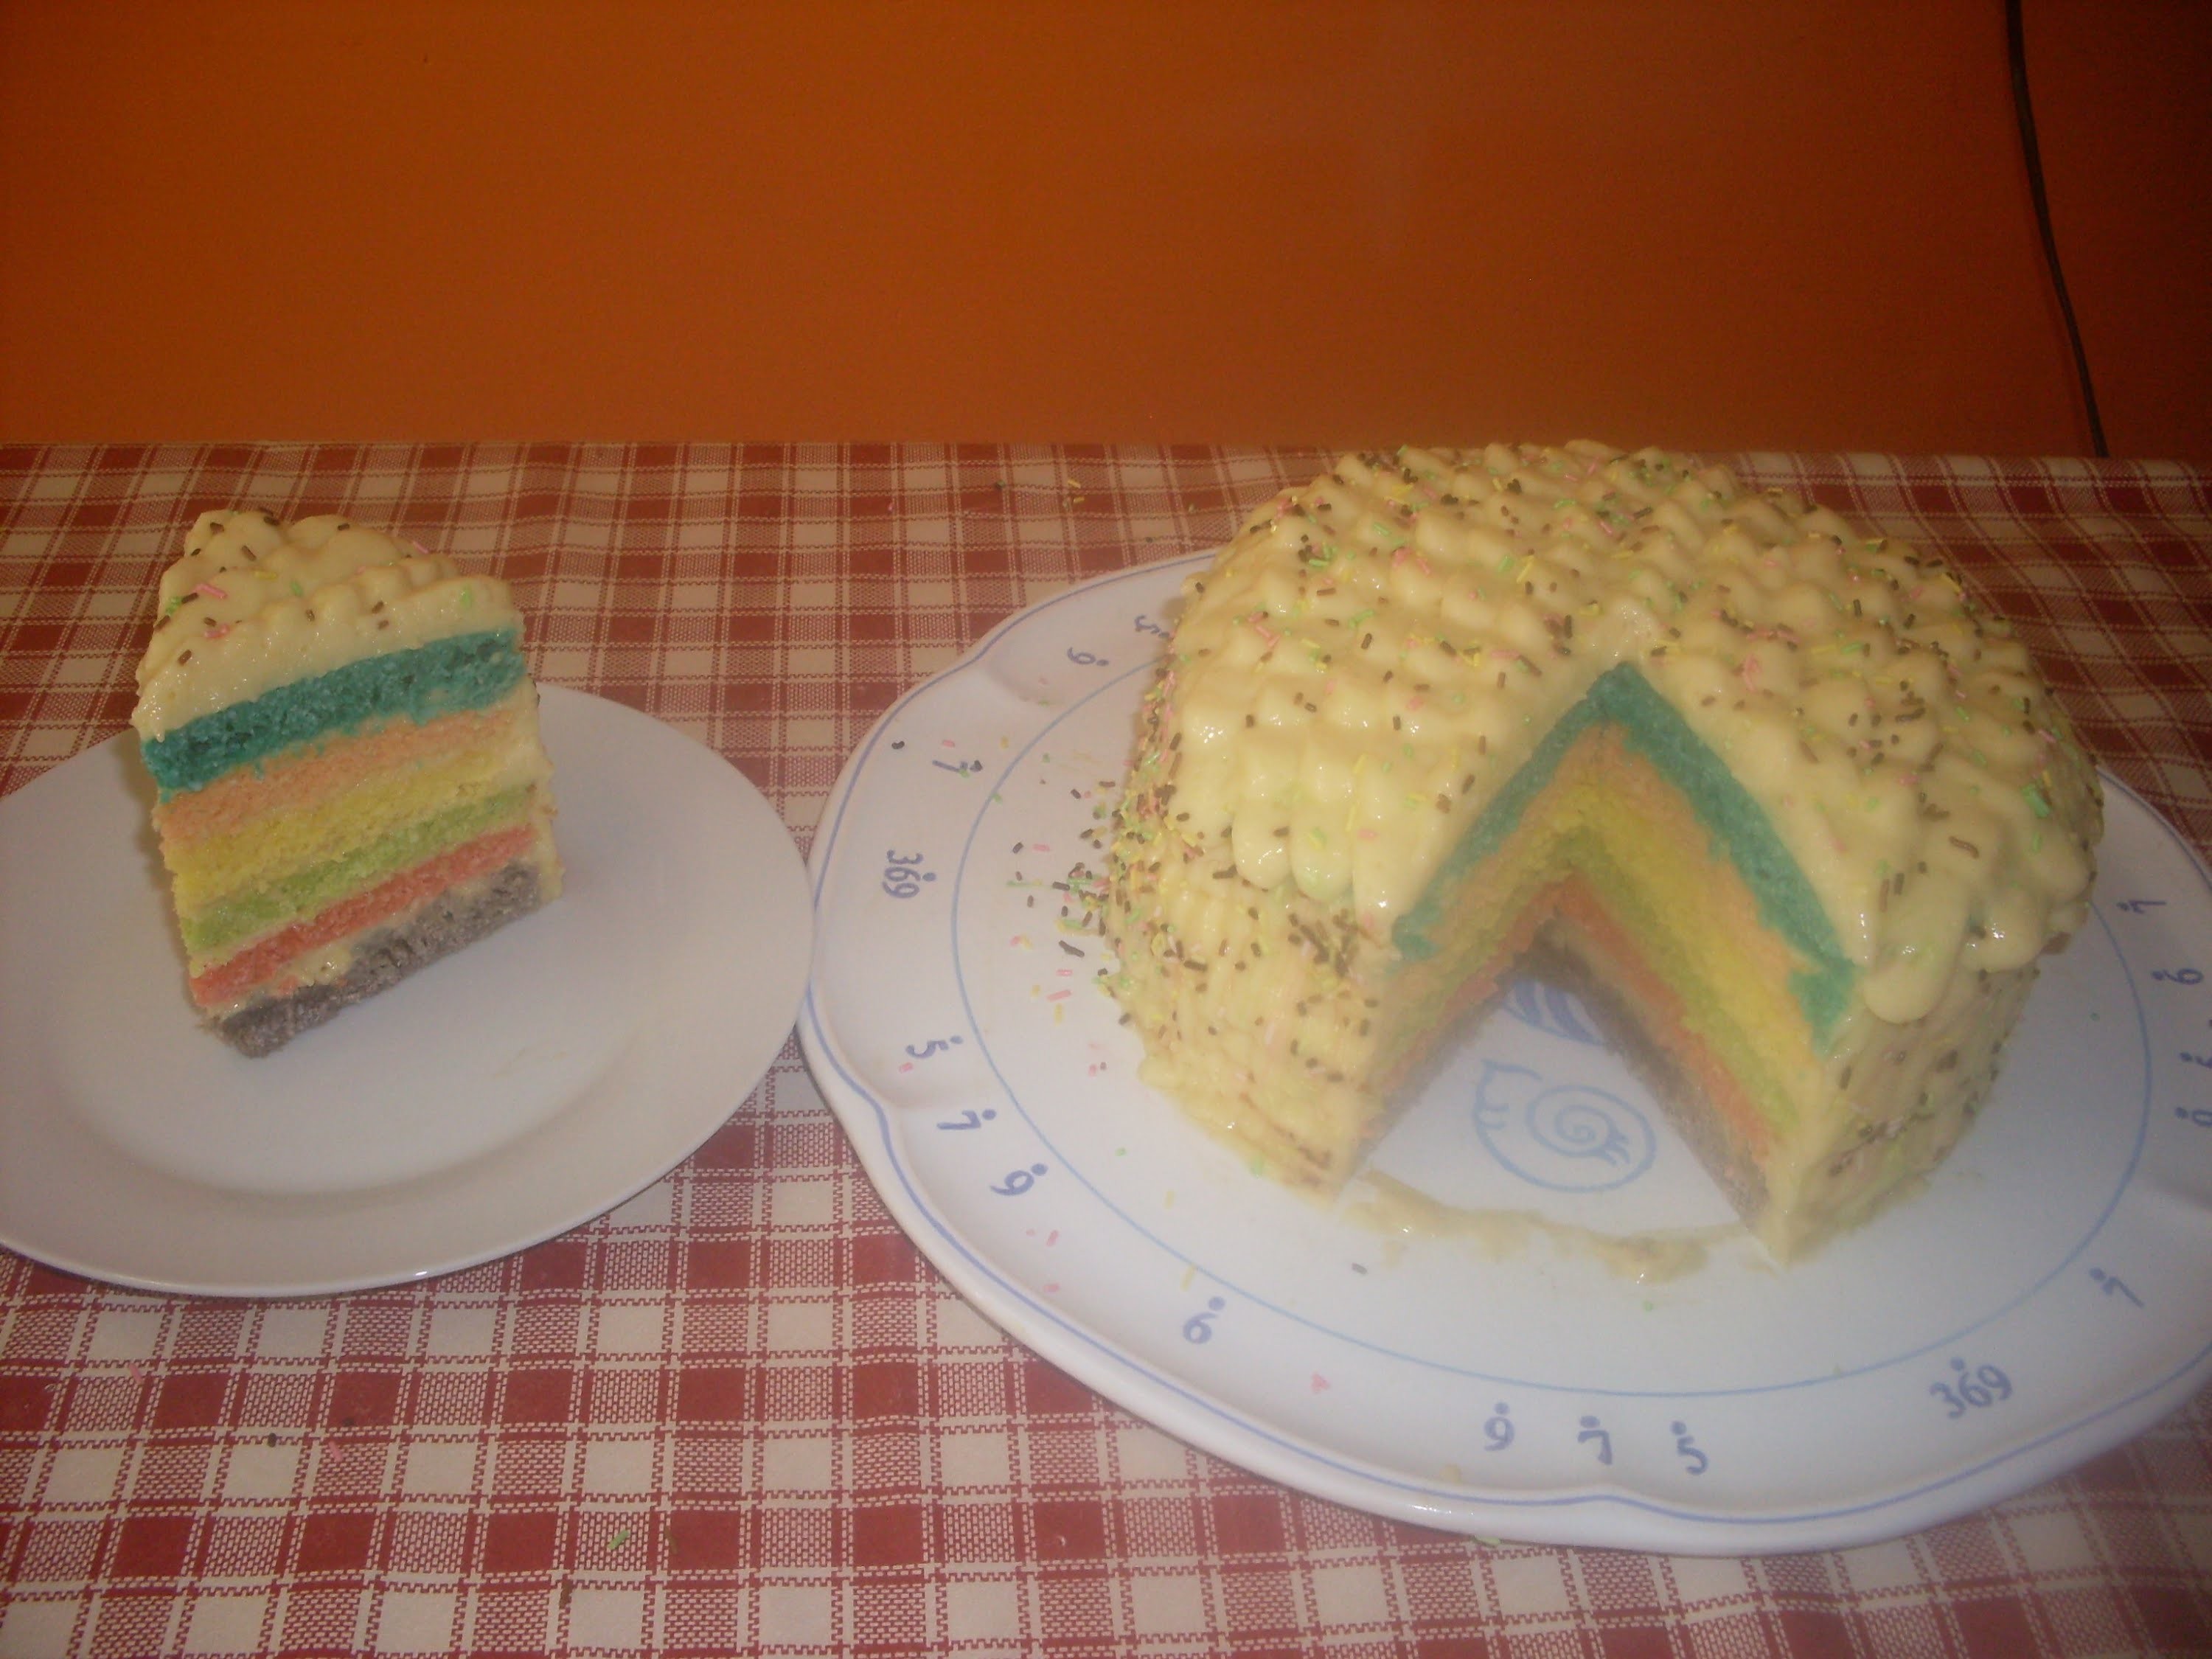 Comment faire un rainbow cake - Recette gâteau americain